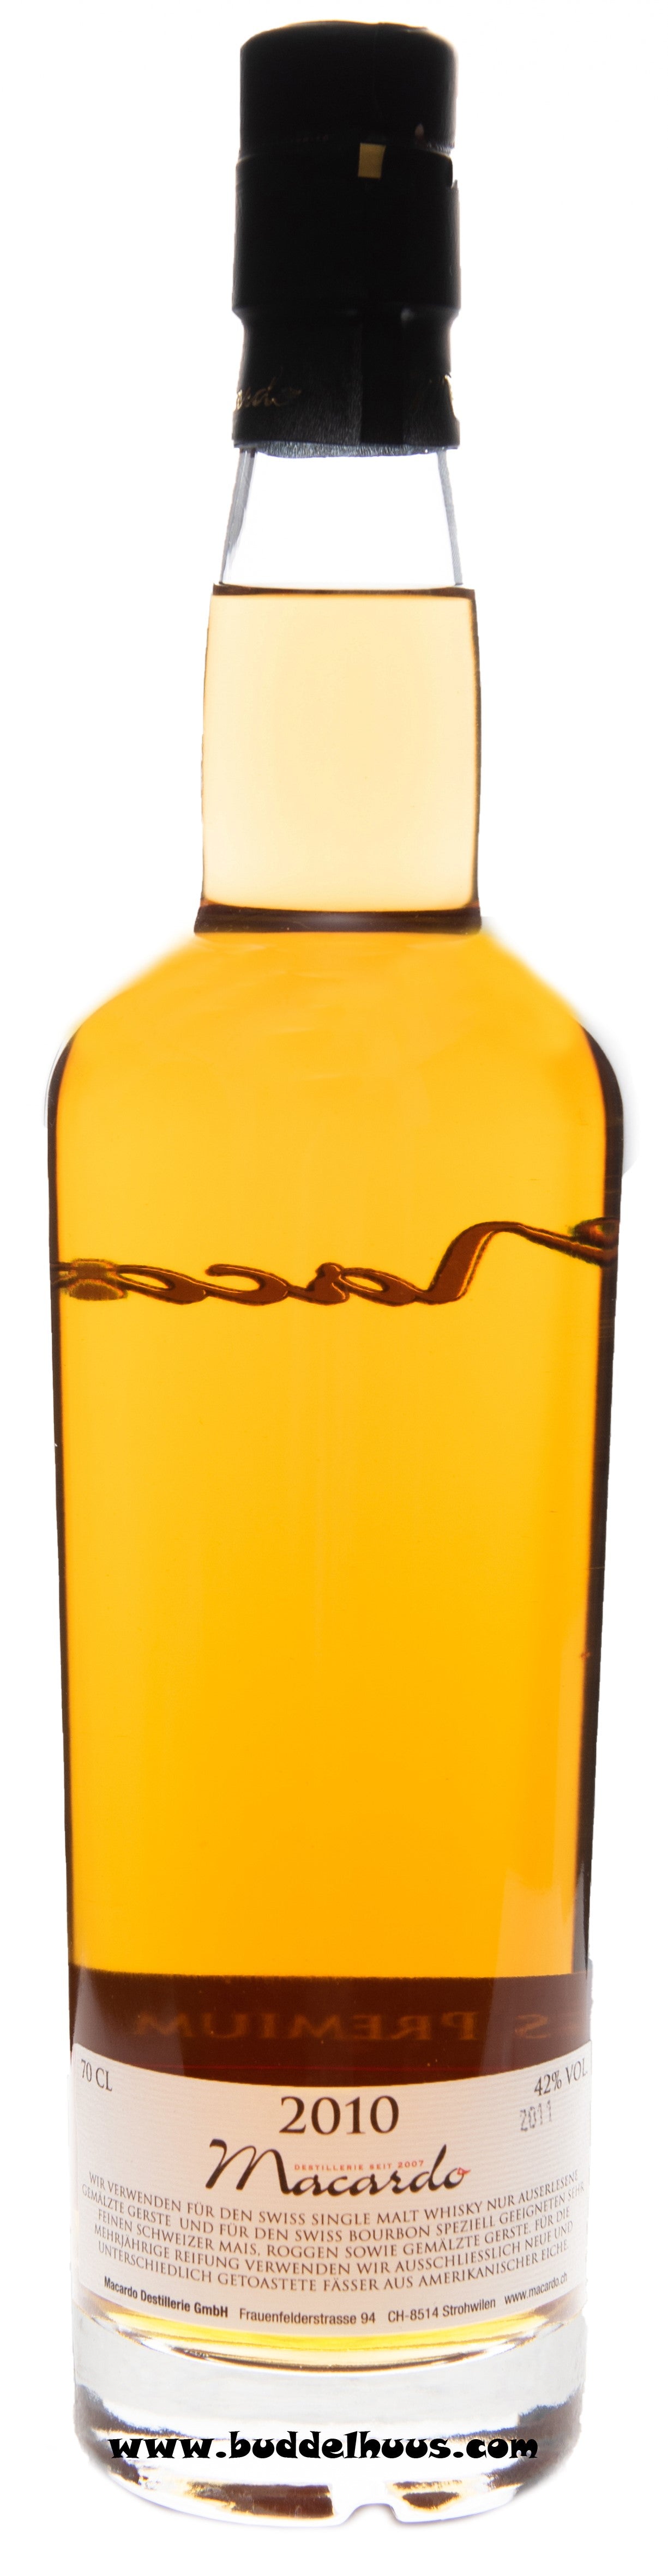 Macardo Swiss Bourbon